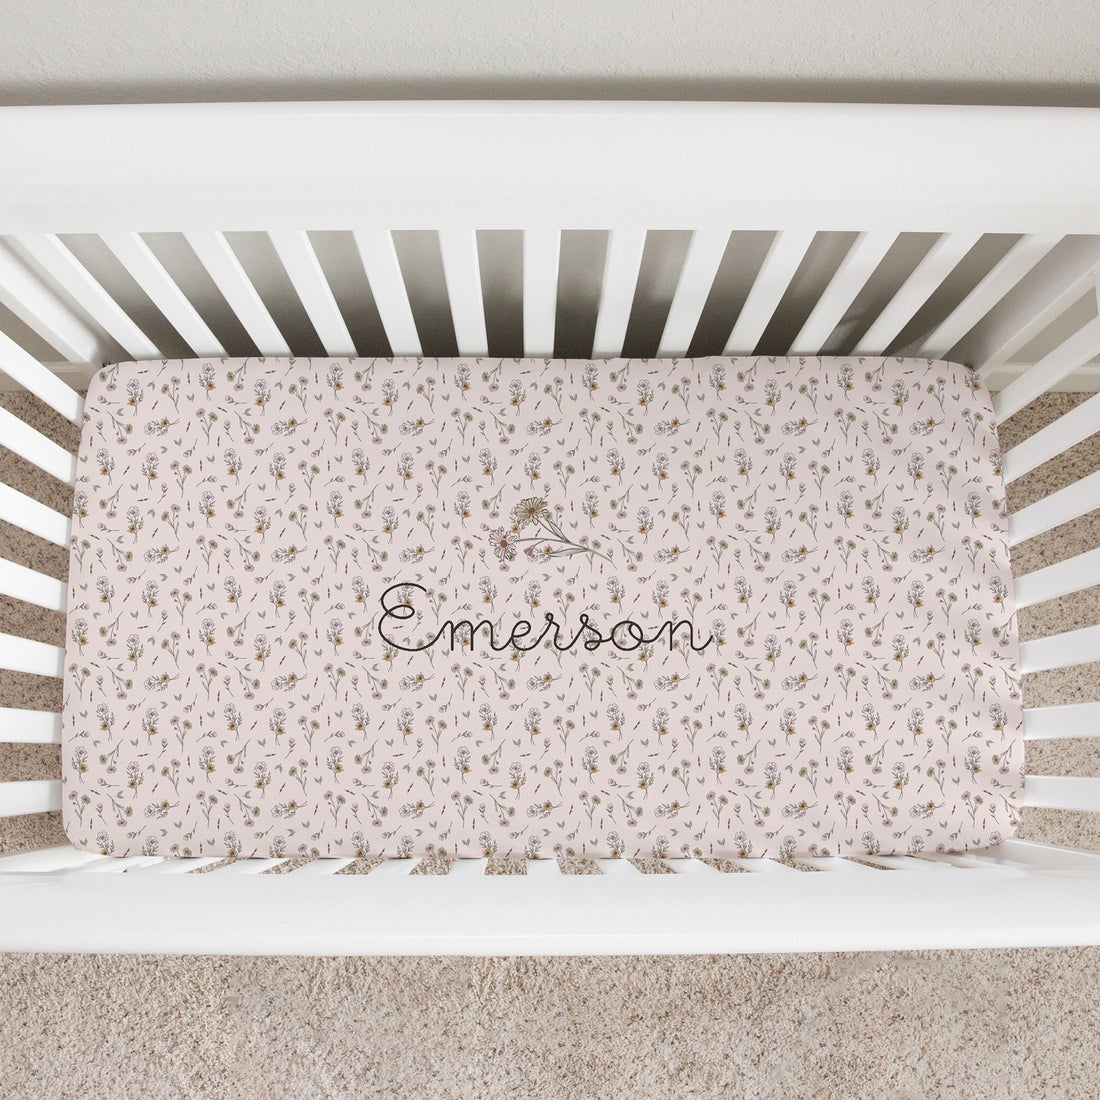 Emersynn Floral Personalized Custom Crib Sheet